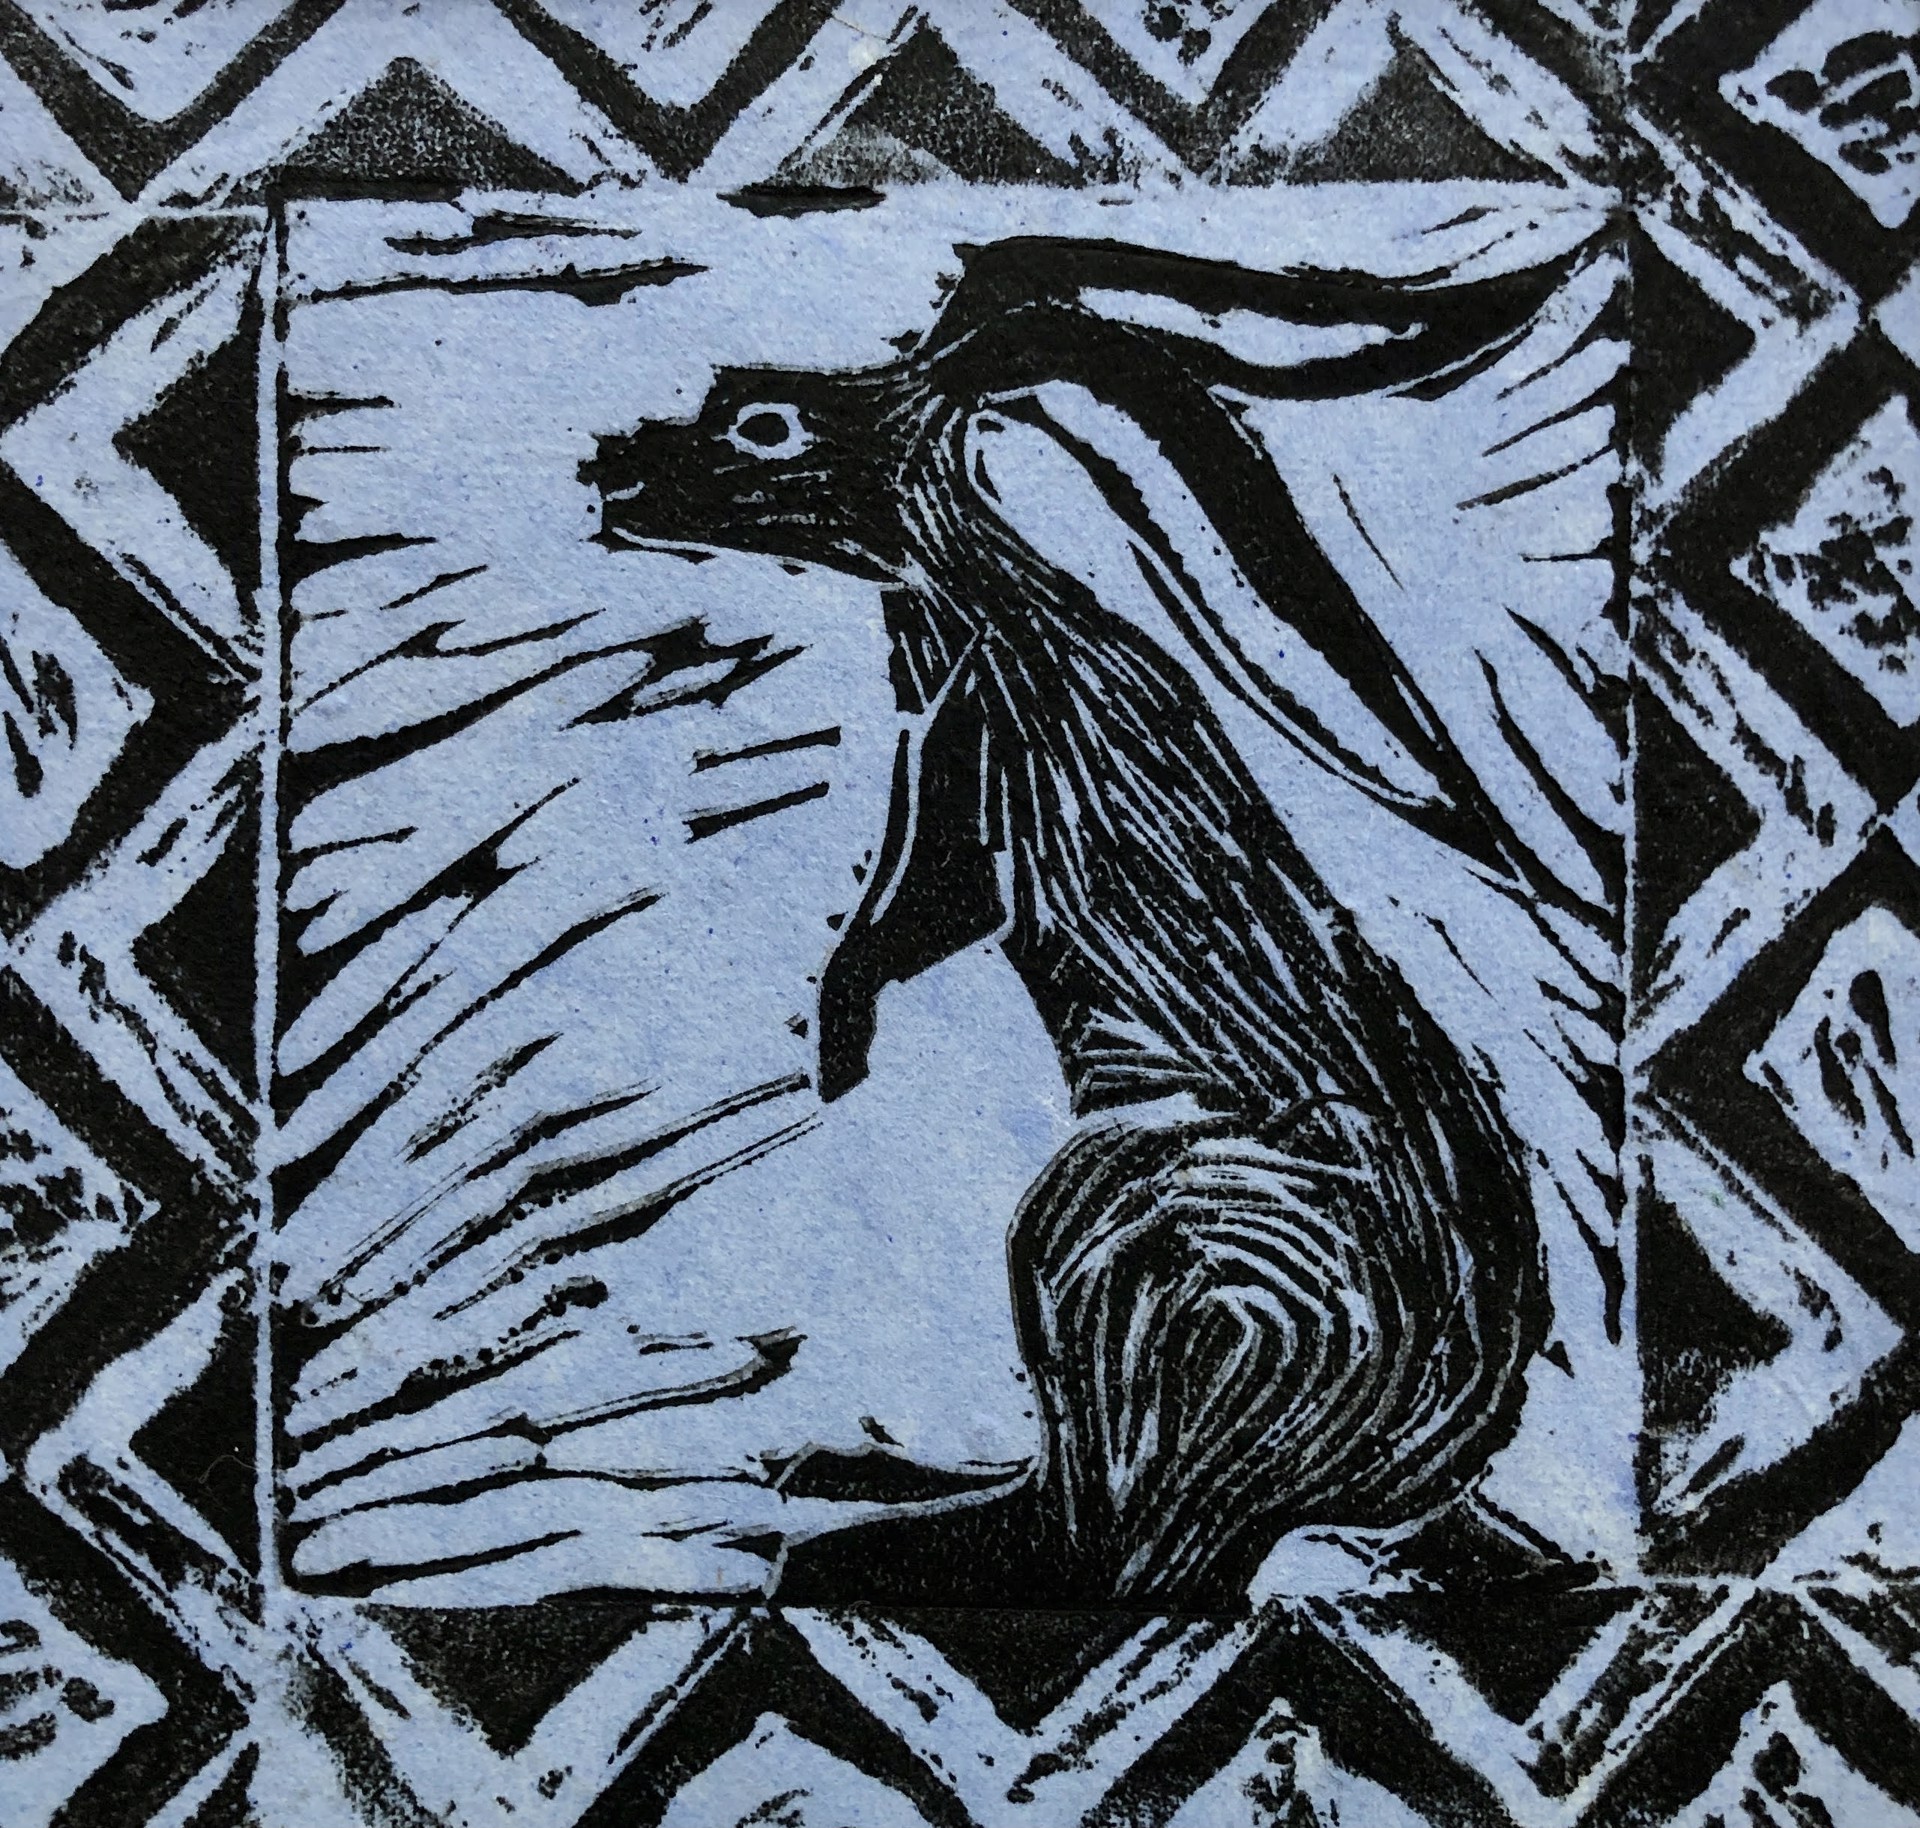 Jack Rabbit#2 by Pamela Hollinde